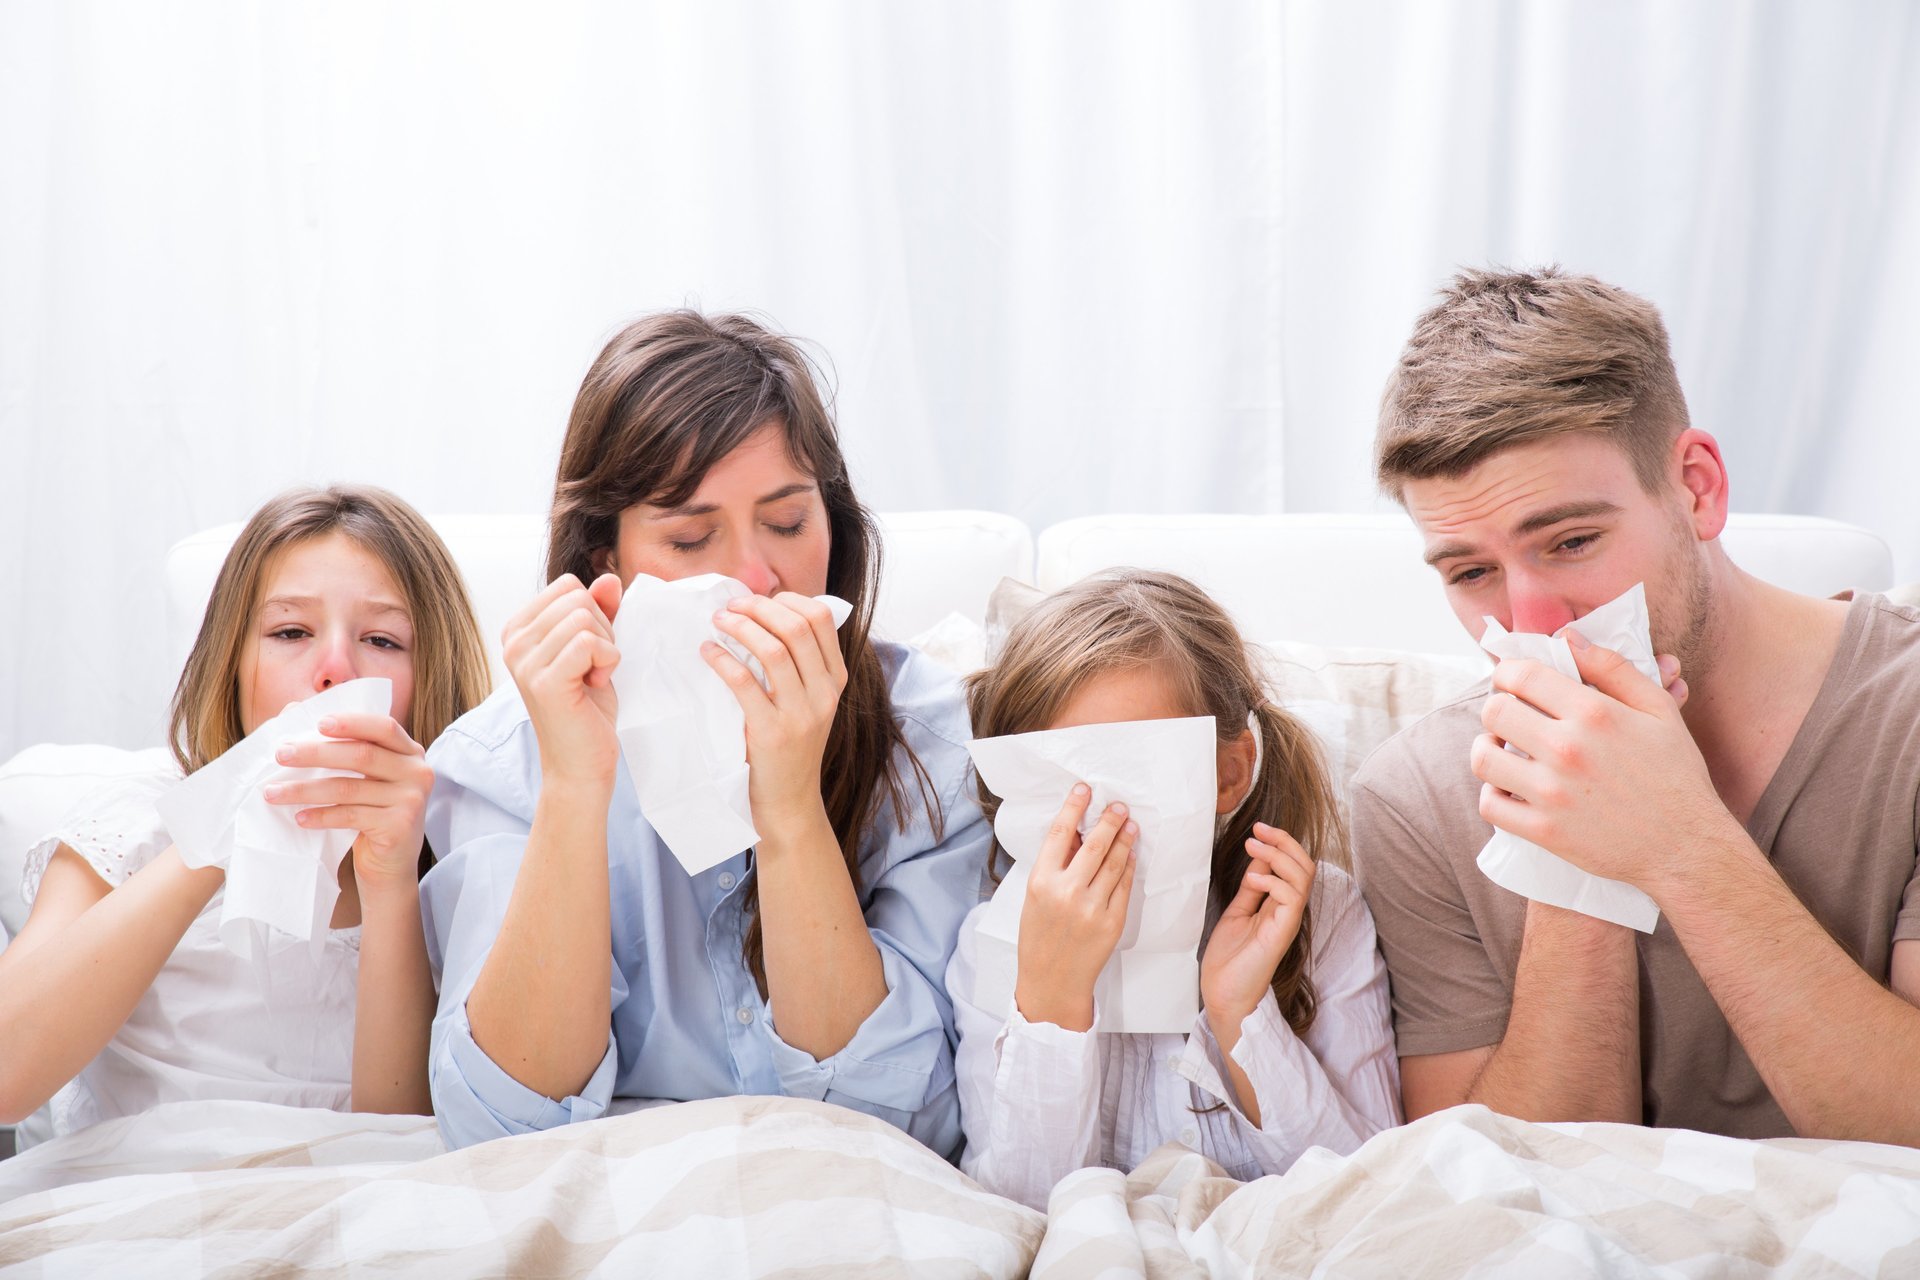 اعراض الانفلونزا تمثل علاج طبيعى لنزلات البرد ومقاومة جسمك للمرض